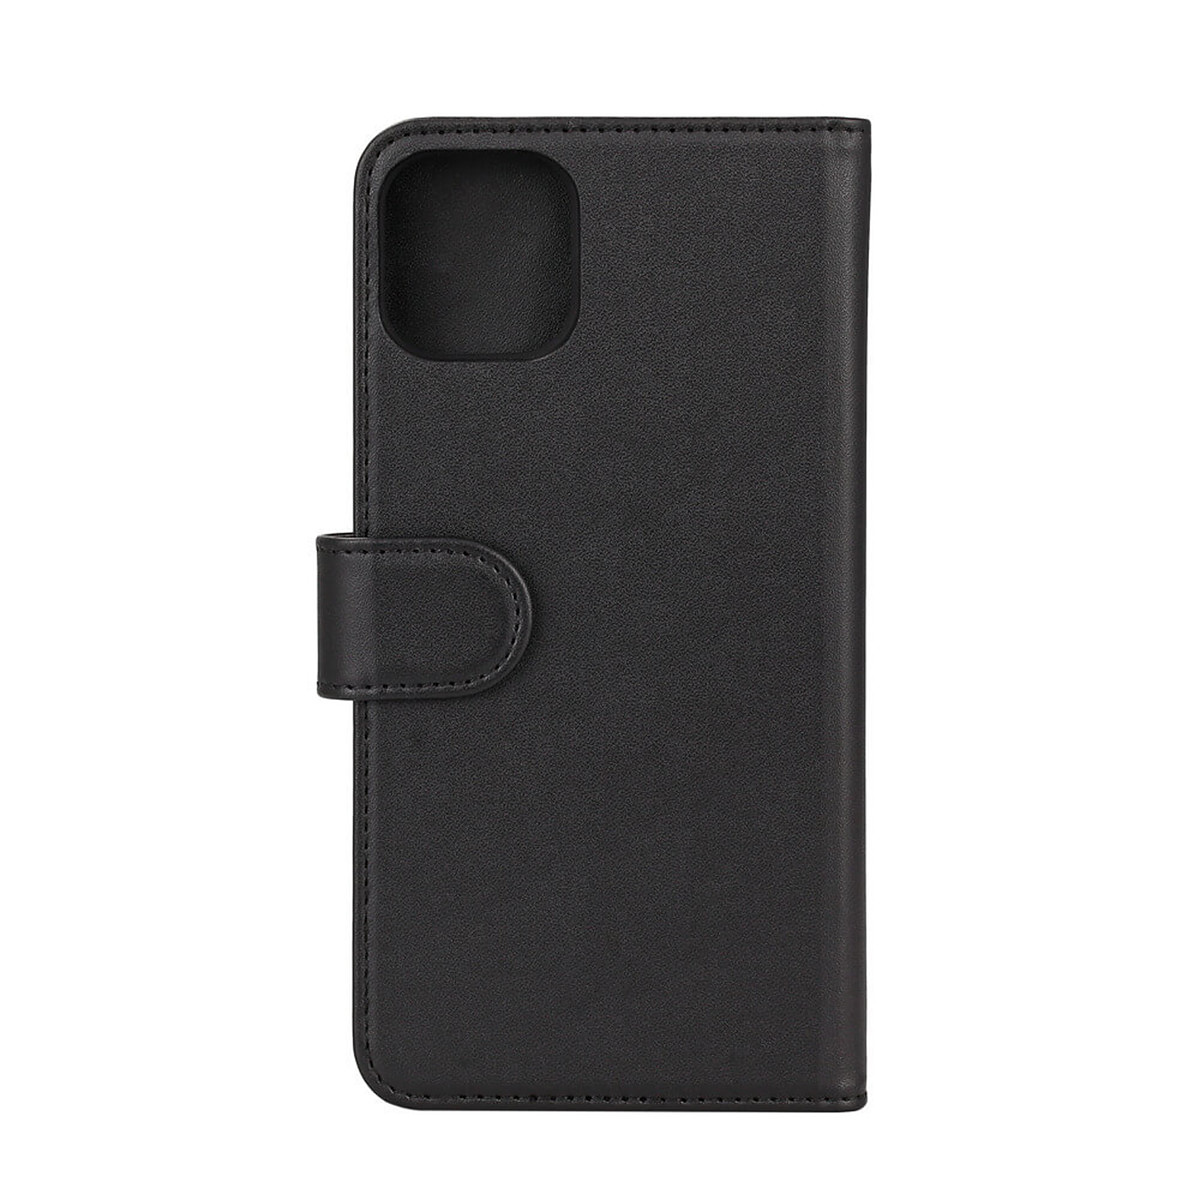 Gear plånboksväska, 2in1 magnetskal, iPhone 11 Pro Max, svart